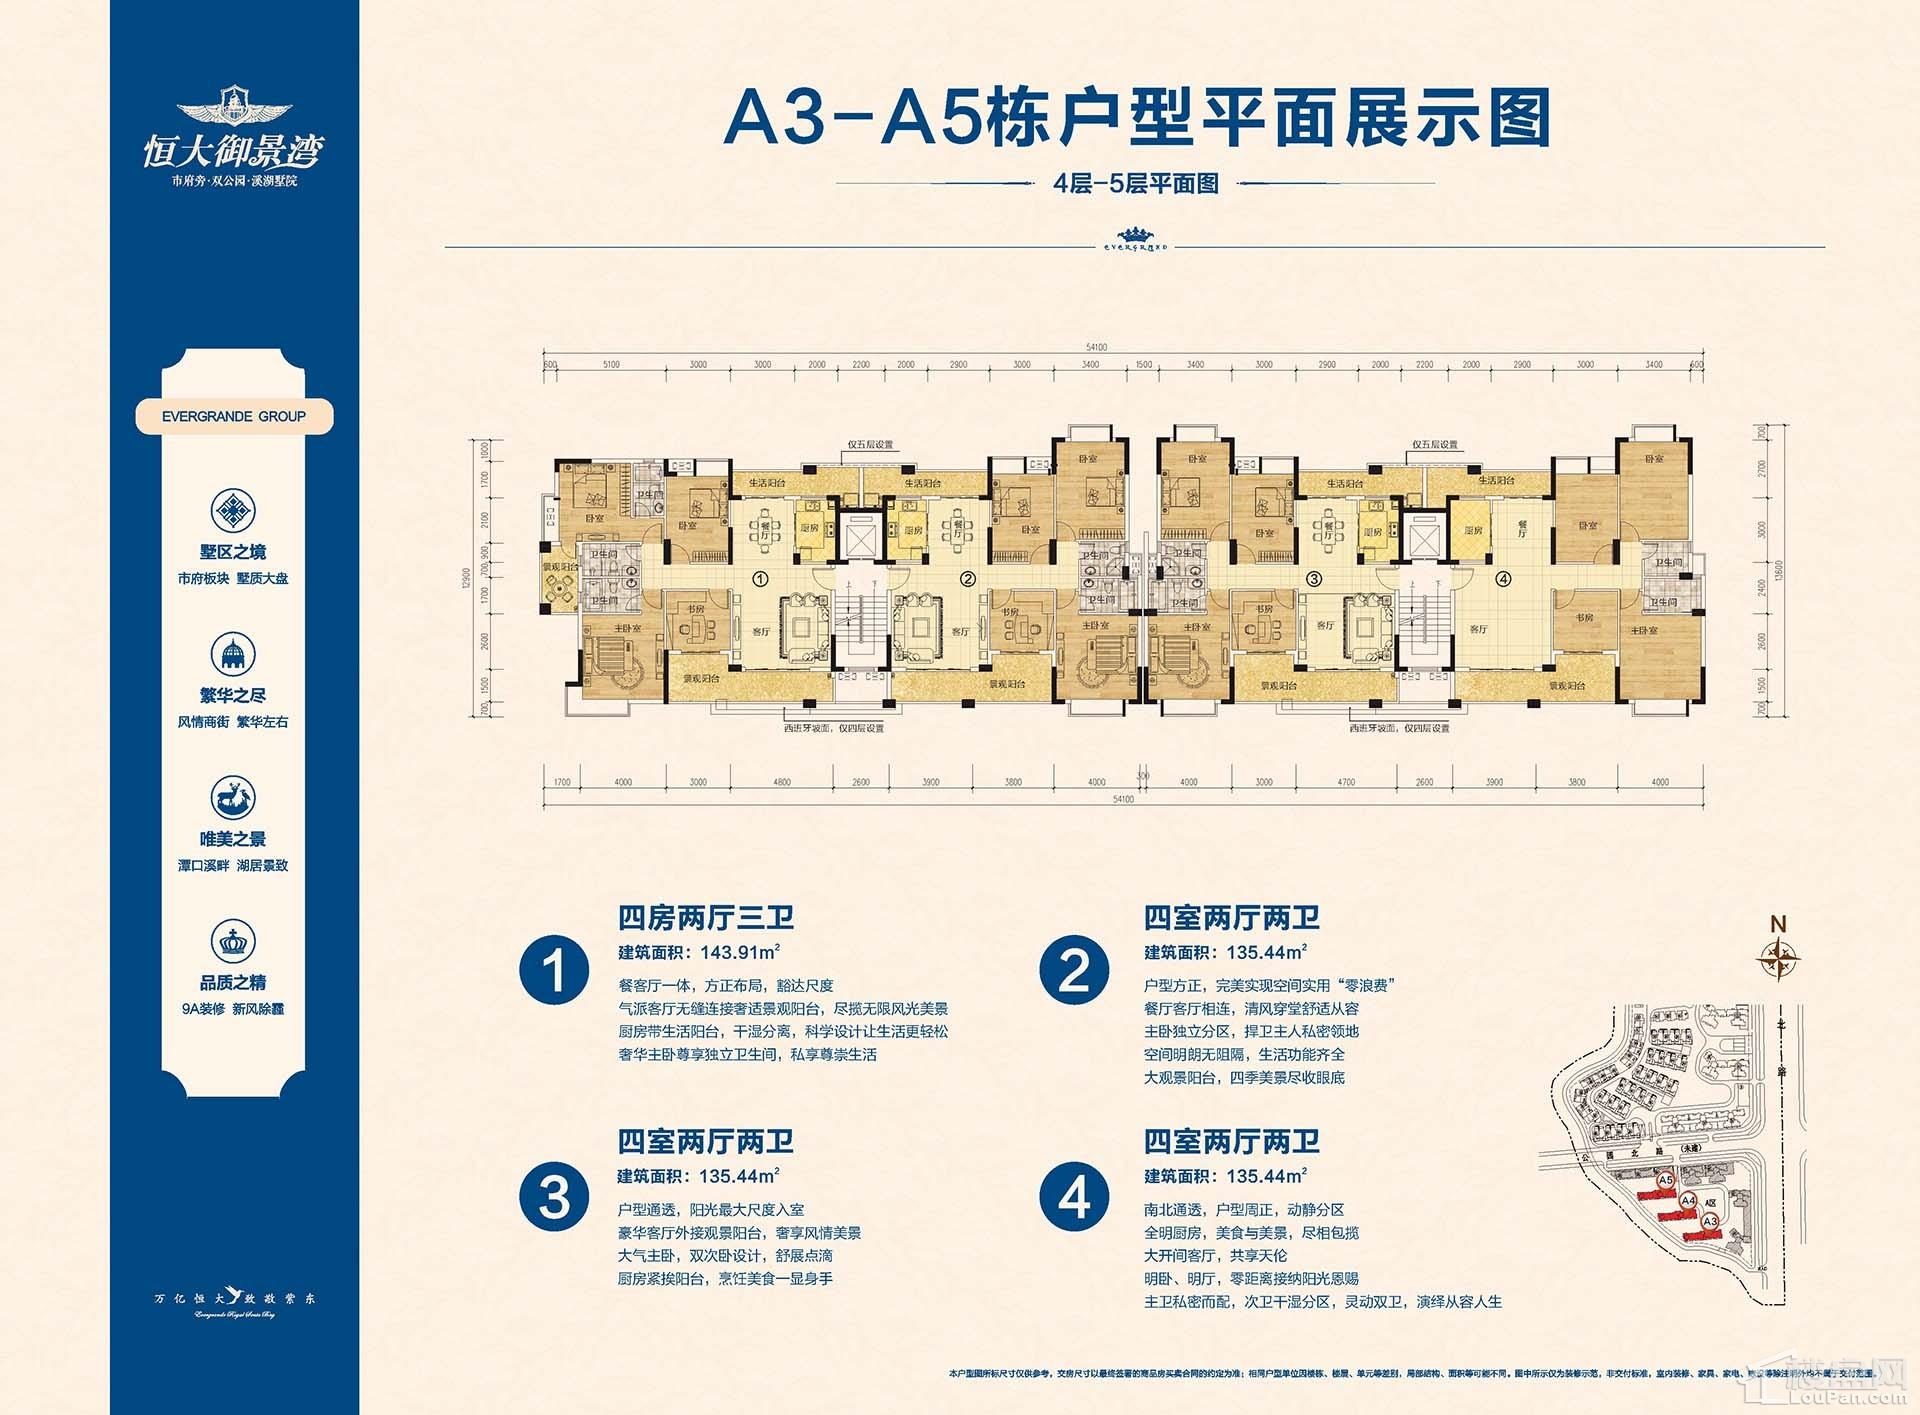 A3-A5栋4-5层平面图